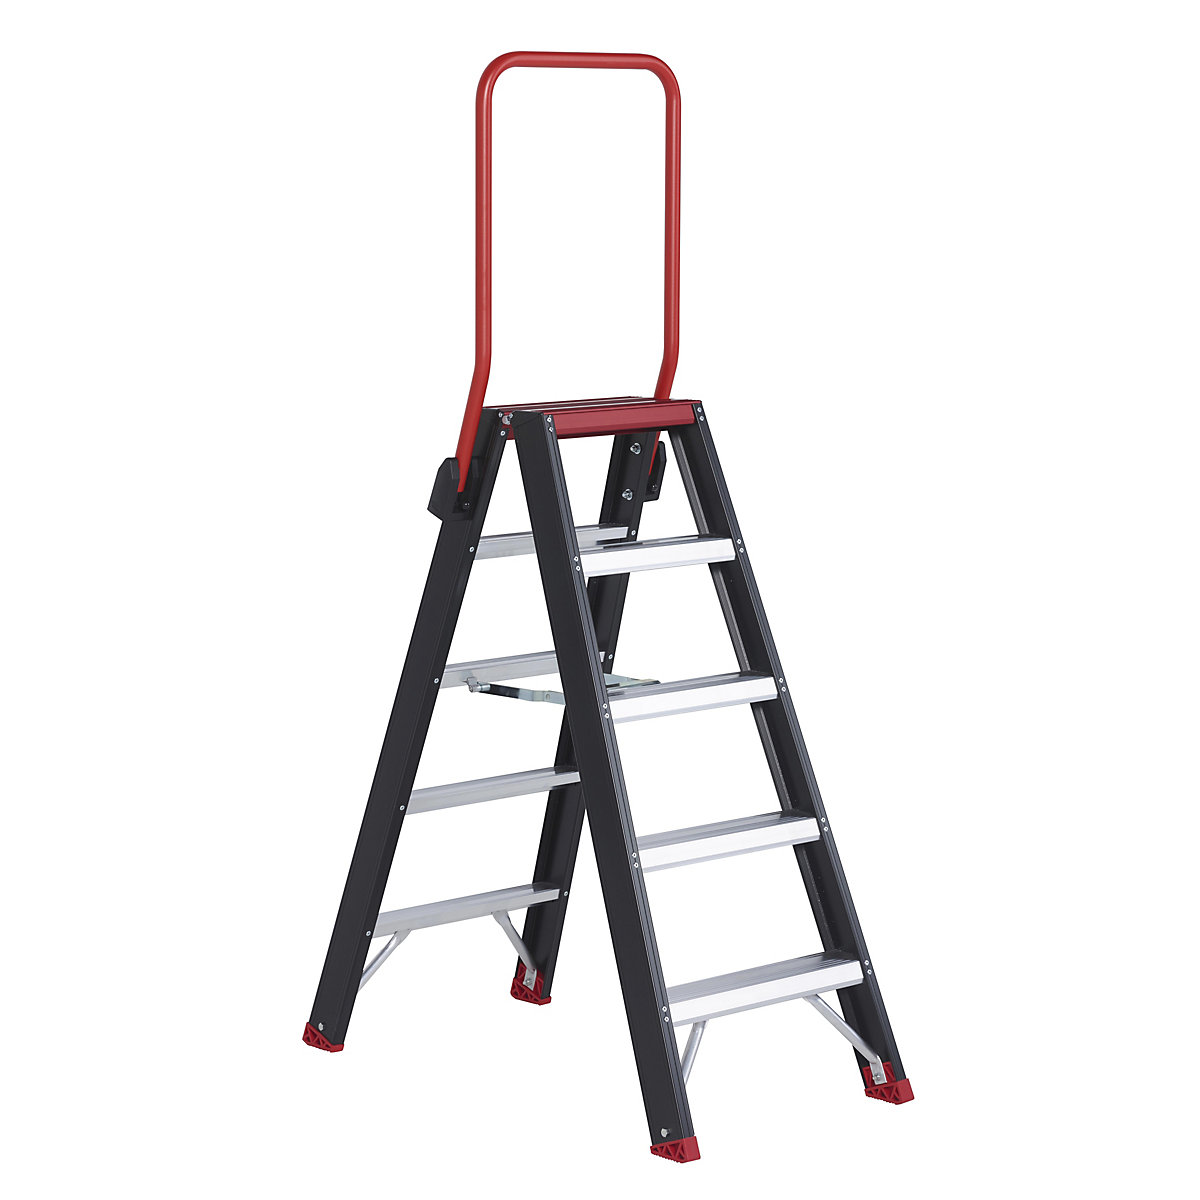 Escada dupla de segurança – Altrex, subida dos dois lados, 2 x 5 degraus-10